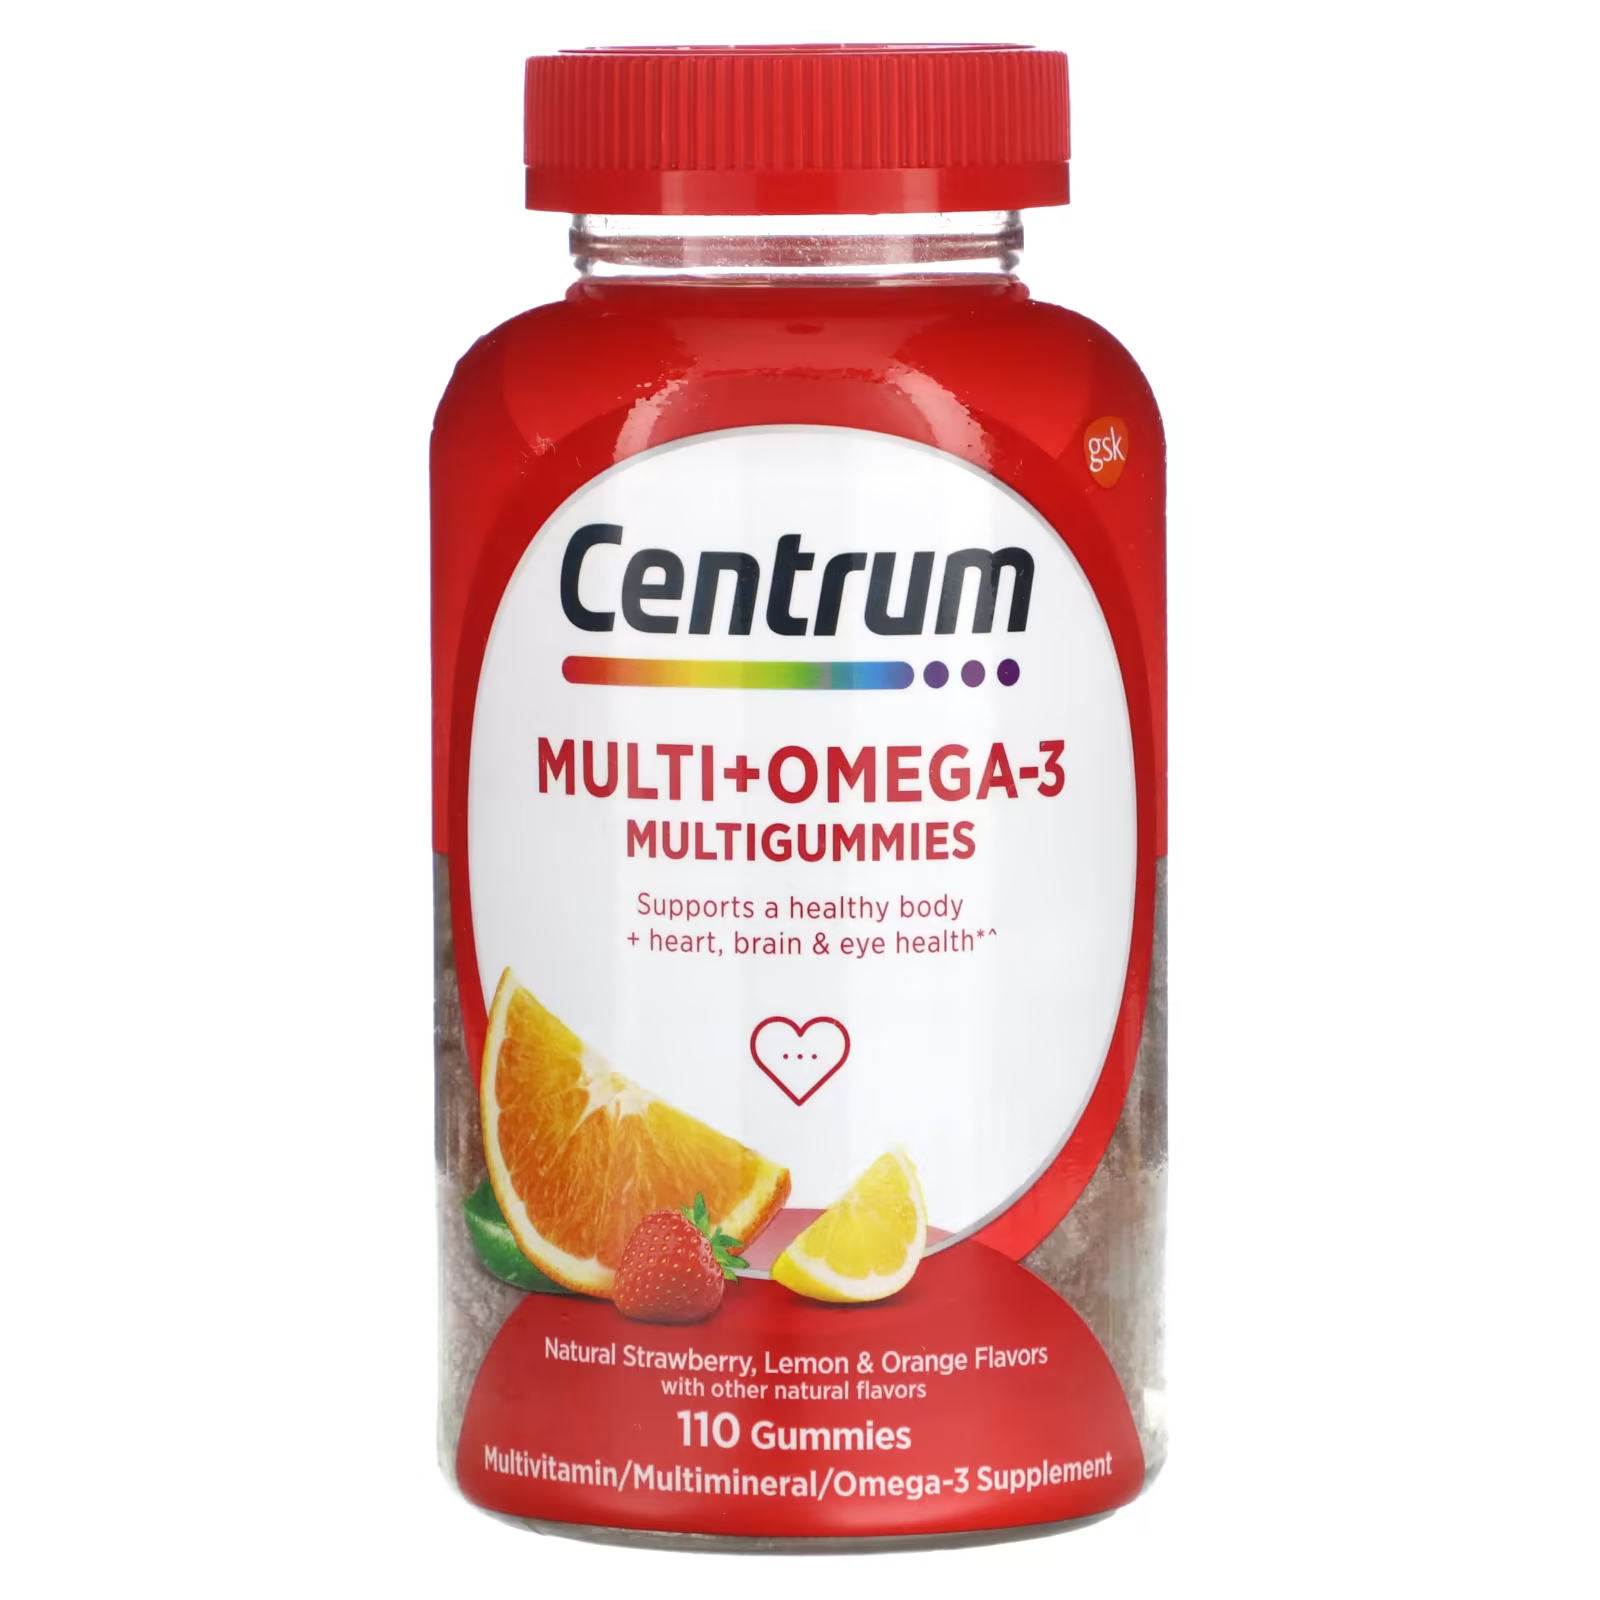 Мультивитаминная добавка Centrum Multi + Omega-3 Multigummies клубника, лимон и апельсин, 110 жевательных конфет мультивитамины centrum multigummies adults 50 120 жевательных конфет